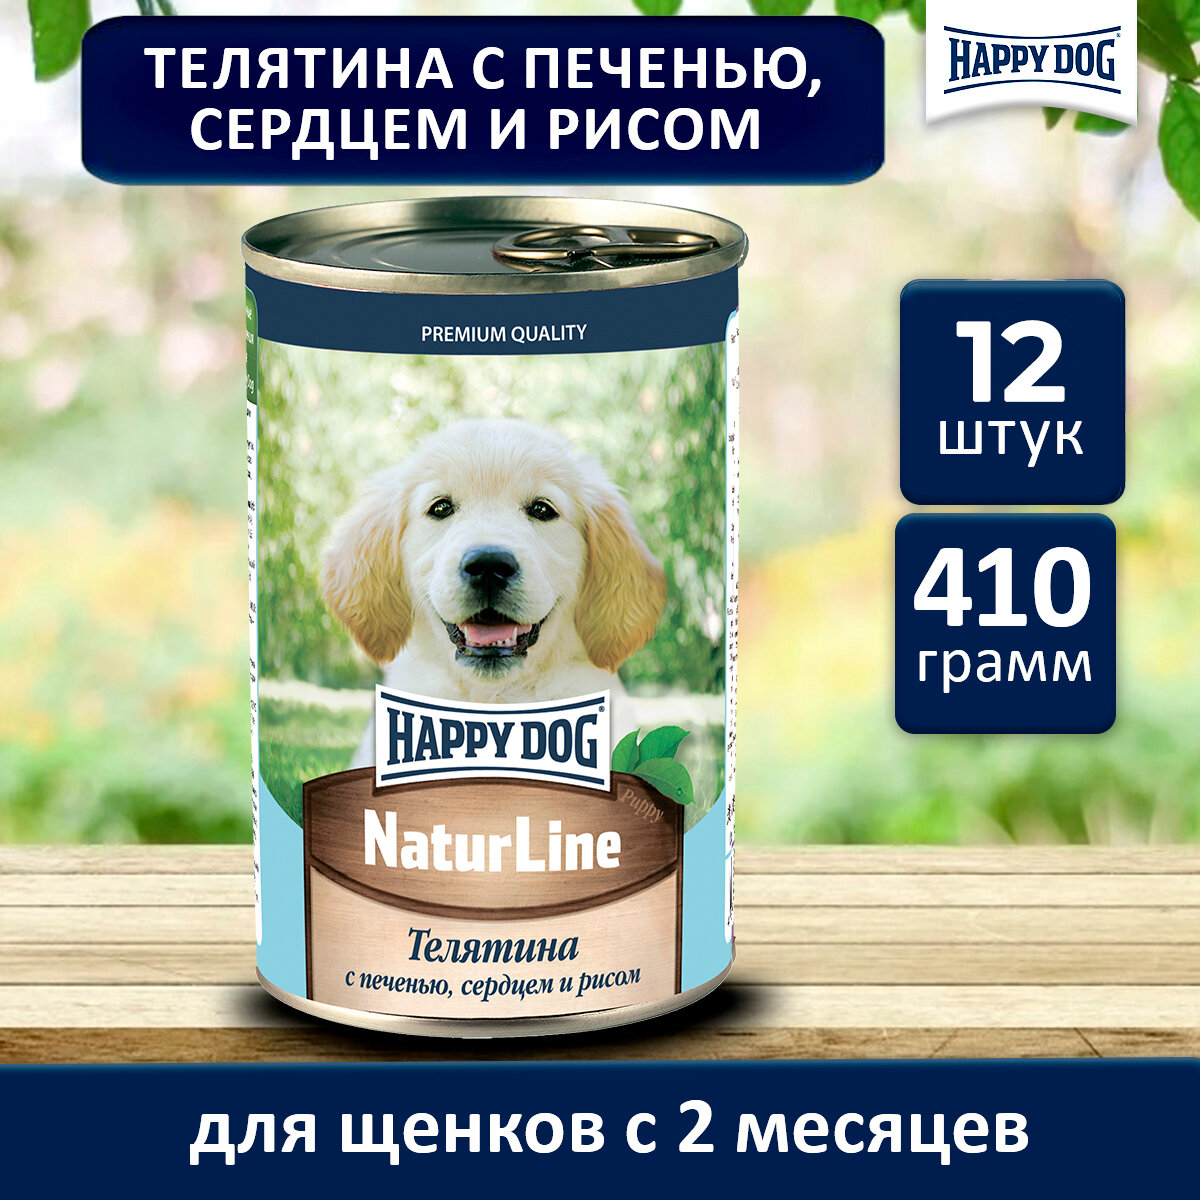 Консервы Happy Dog для щенков телятина с печенью, сердцем и рисом 410г х 12шт